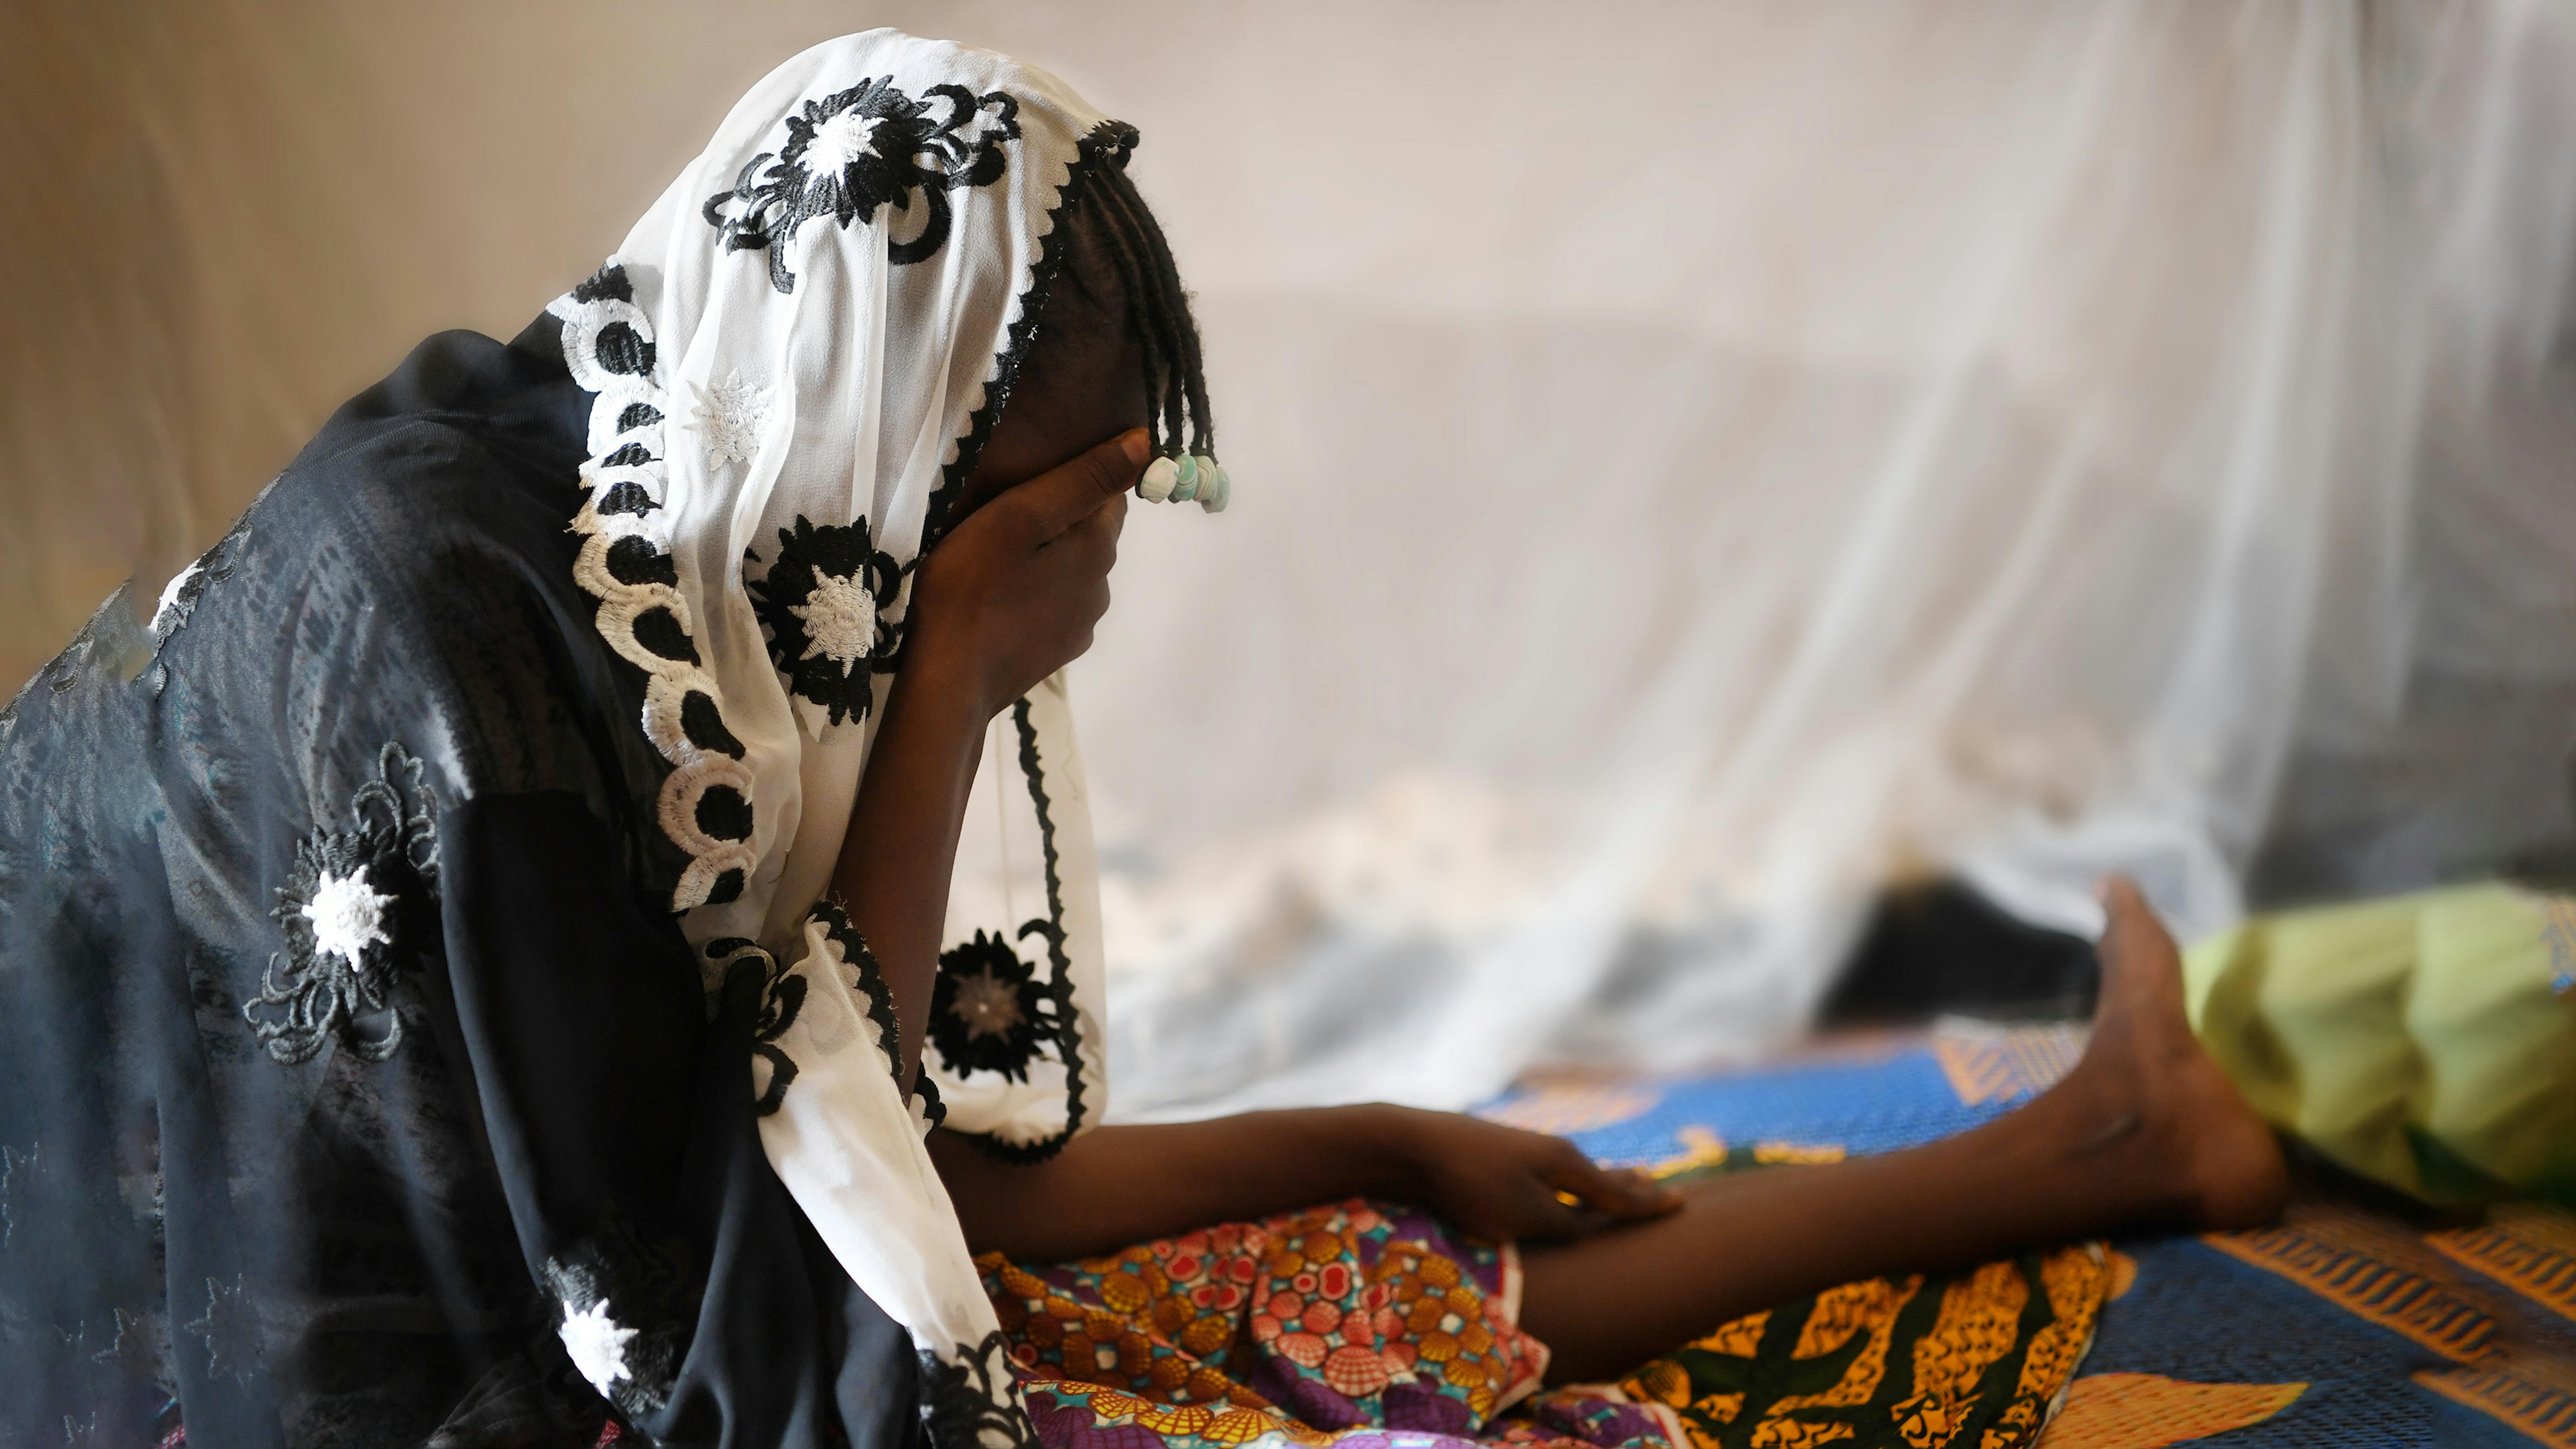 L'UNICEF condanna fermamente le mutilazioni genitali femminili e sostiene le autorità del Burkina Faso nella lotta contro queste pratiche.